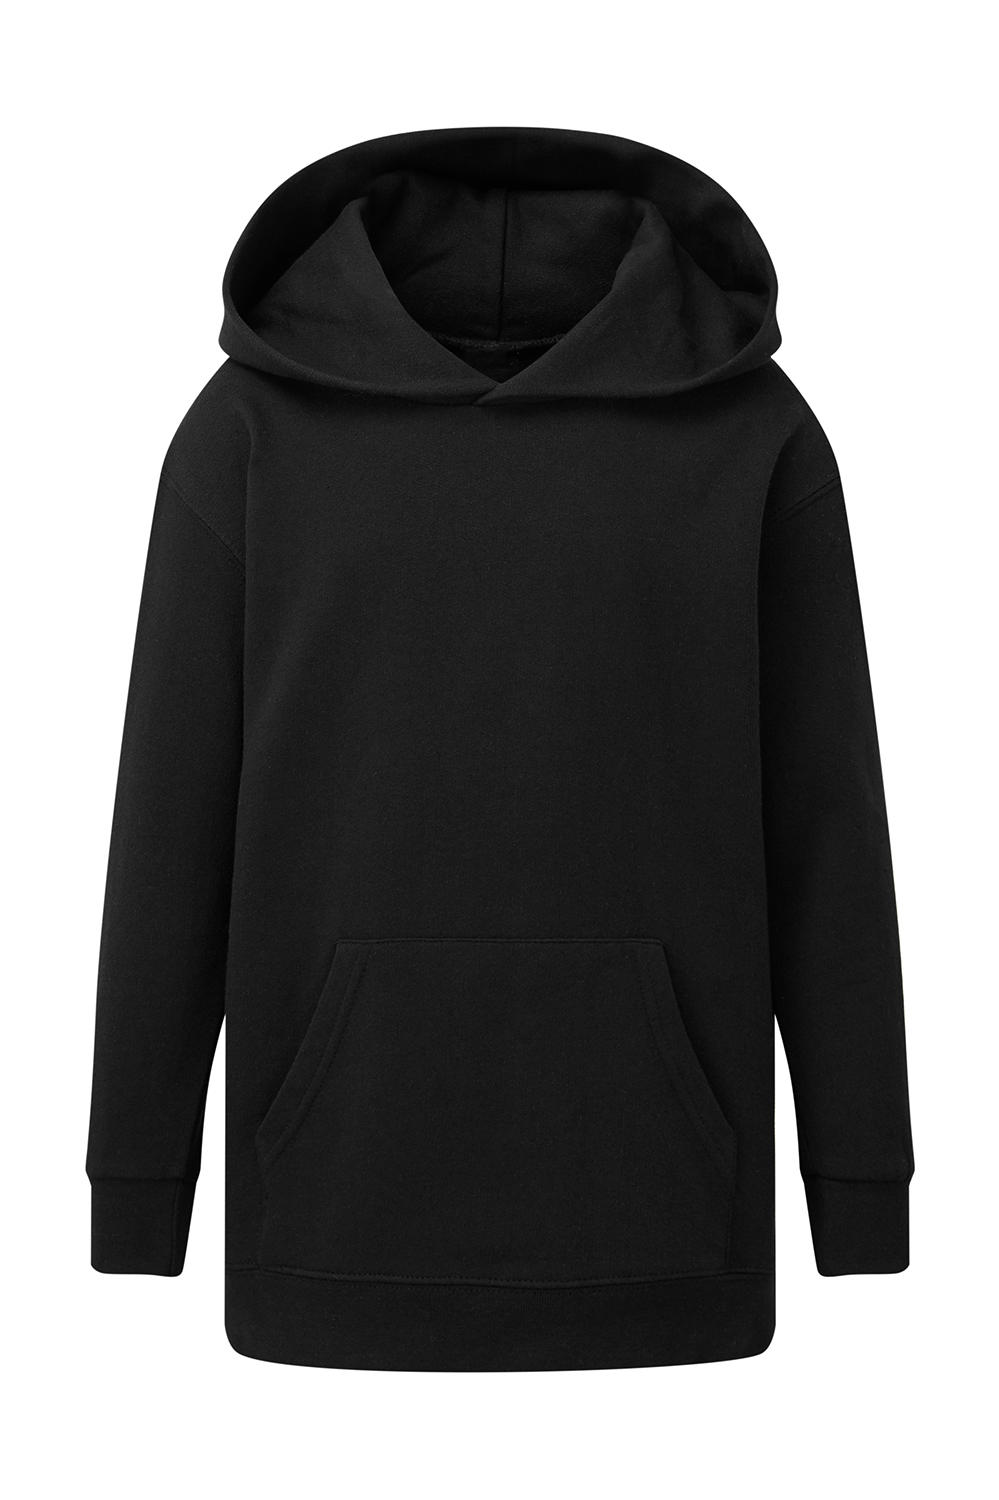  Kids Hooded Sweatshirt in Farbe Dark Black